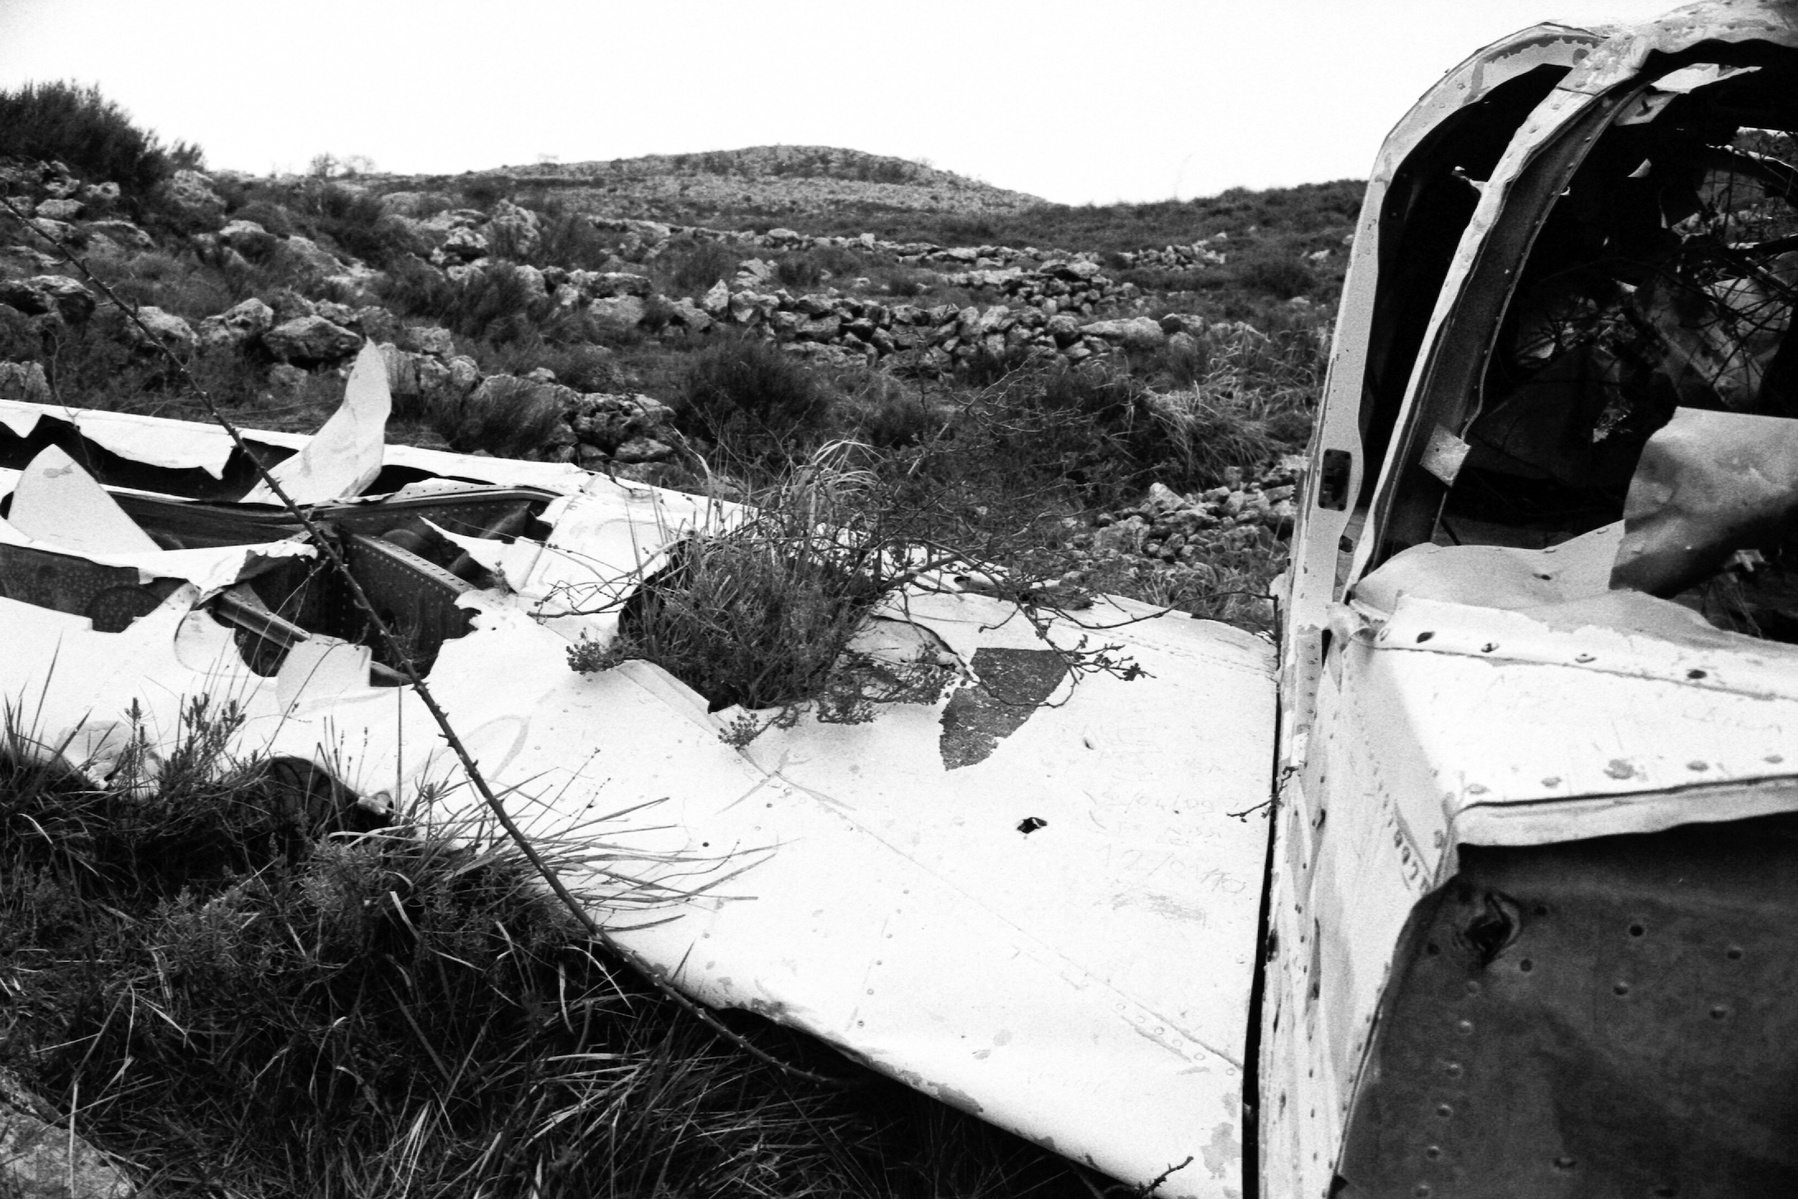 Crashed plane shot by Grégoire Huret with 35mm Leica M6 & Ilford HP5.
Location : Tourrettes-sur-Loup (France)